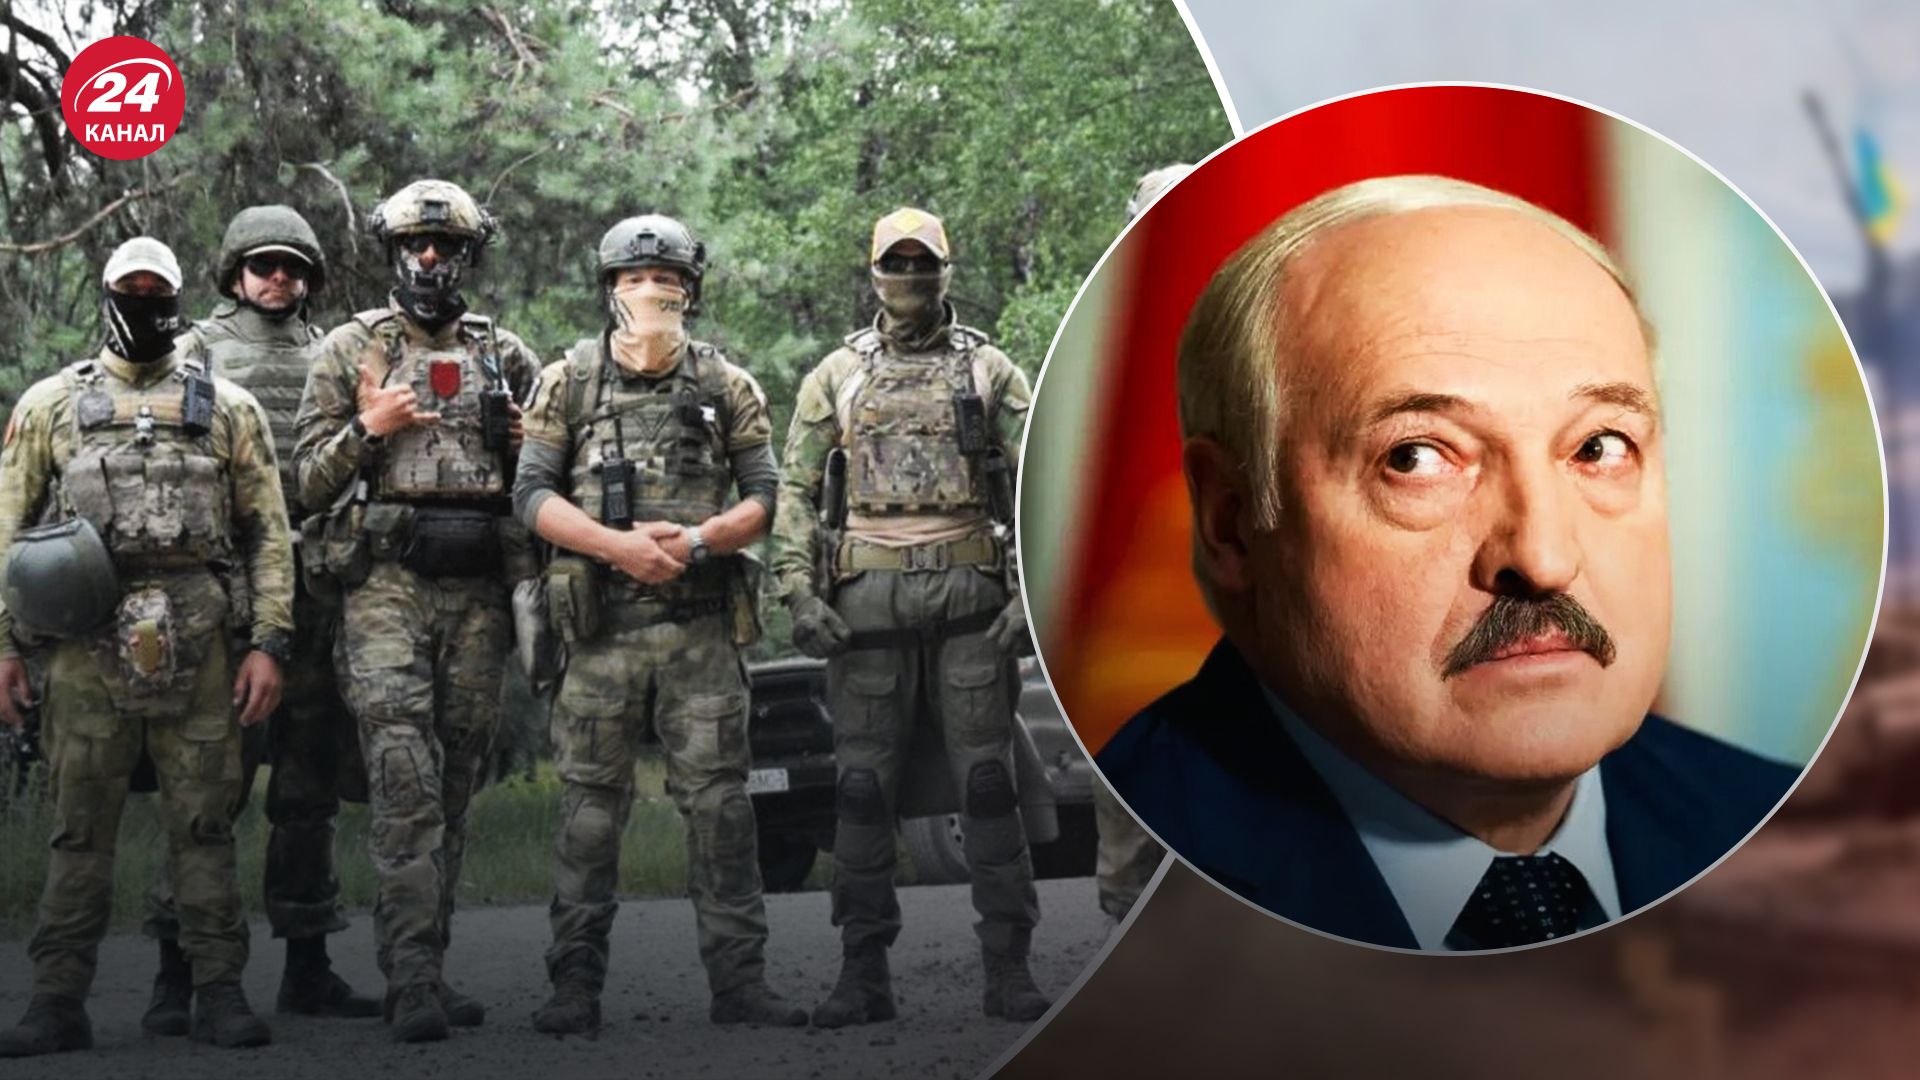 Олександр Лукашенко вербує вагнерівців - Латушко назвав дві причини, навіщо це диктатору - 24 Канал